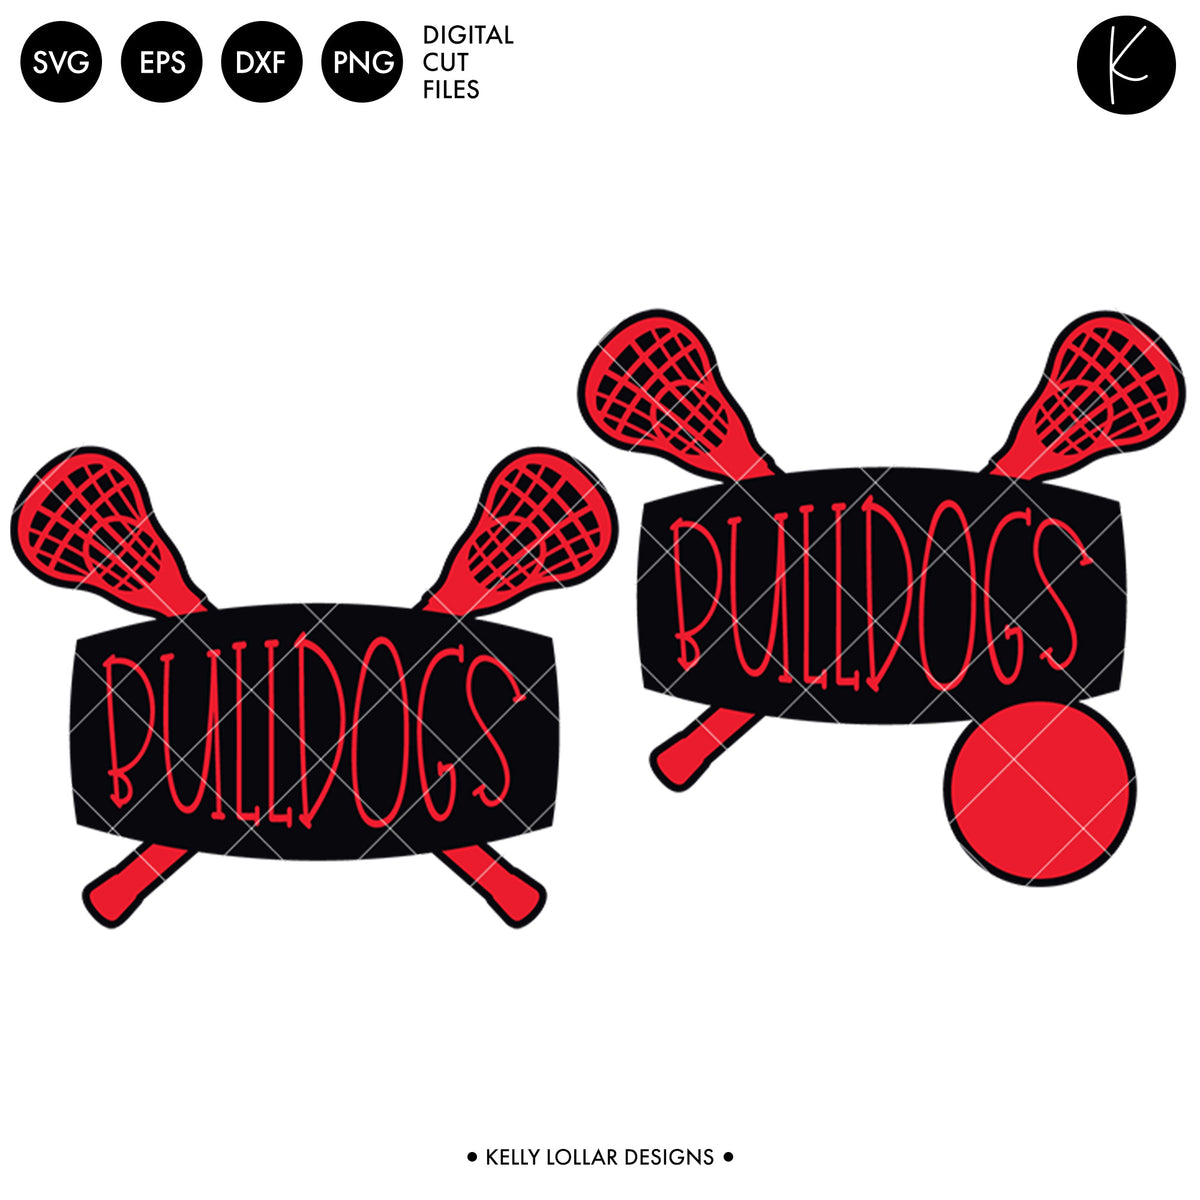 Bulldogs Lacrosse Bundle | SVG DXF EPS PNG Cut Files